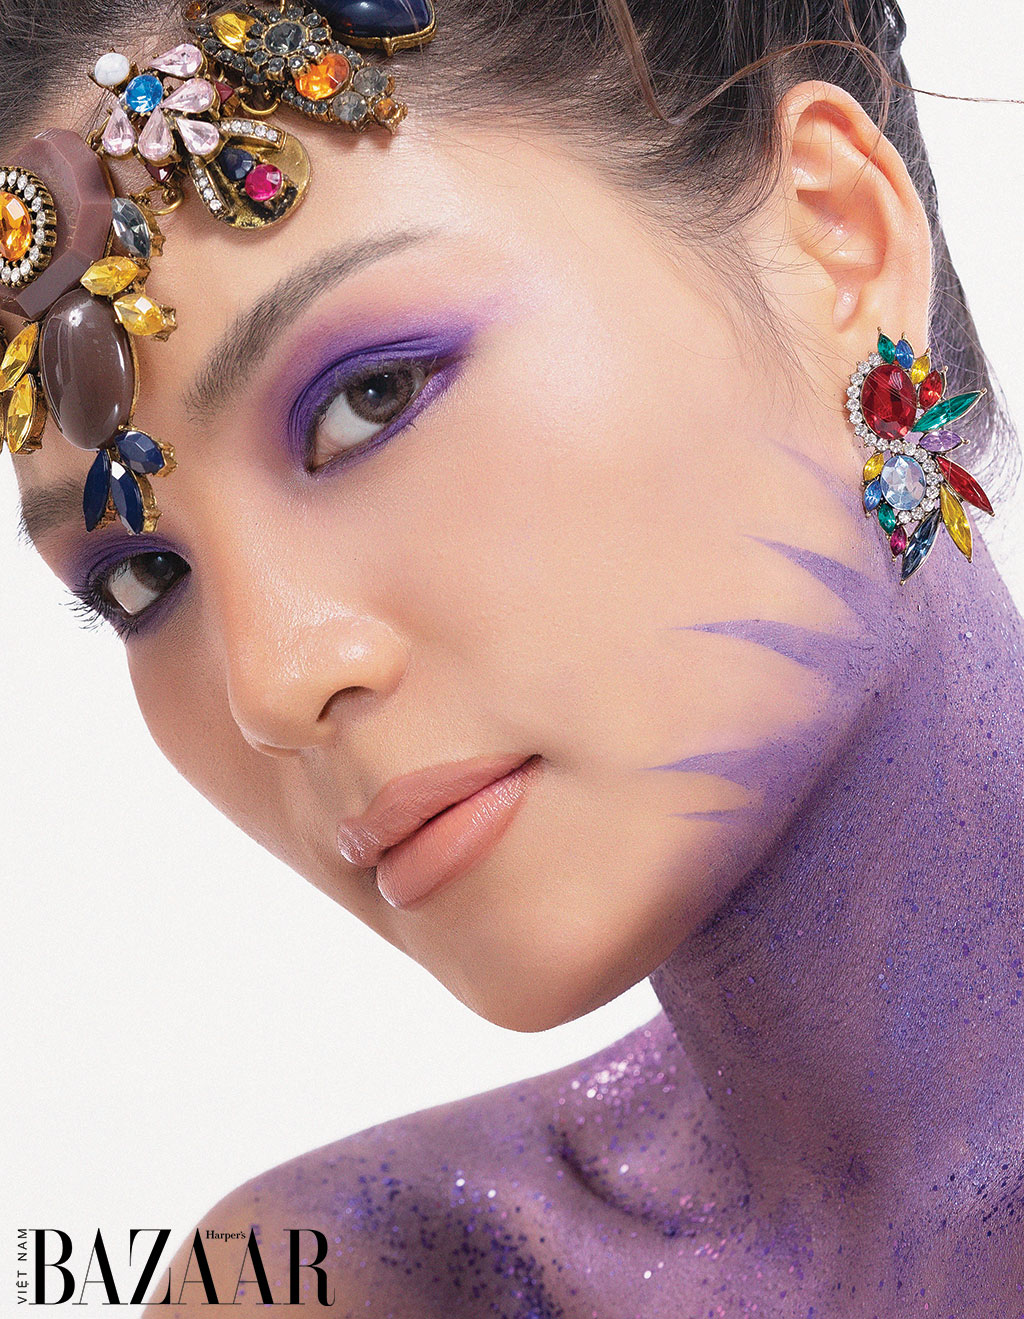 harpers bazaar vietnam trang diem mau tim veri peri 01 - Trang điểm mắt với màu tím Veri Peri, màu của năm 2022